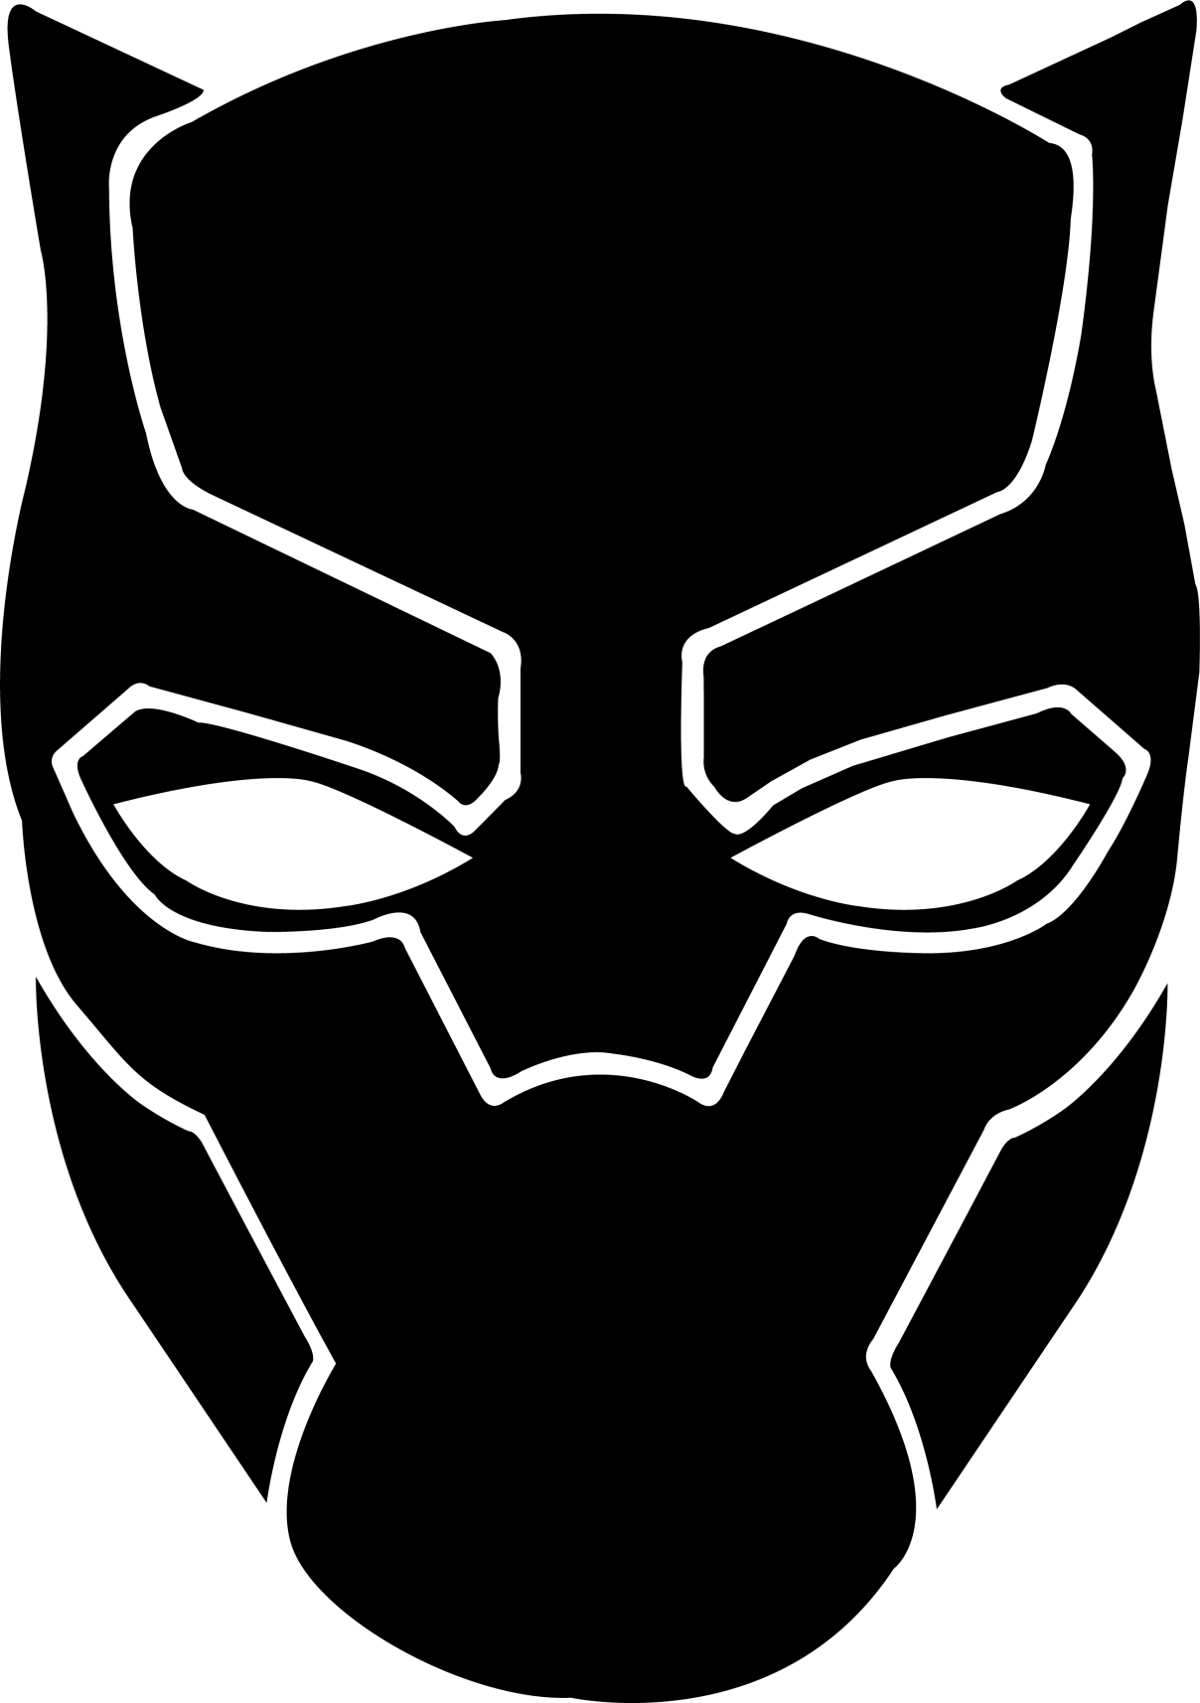 أسود النمر logo PNG صورة خلفية